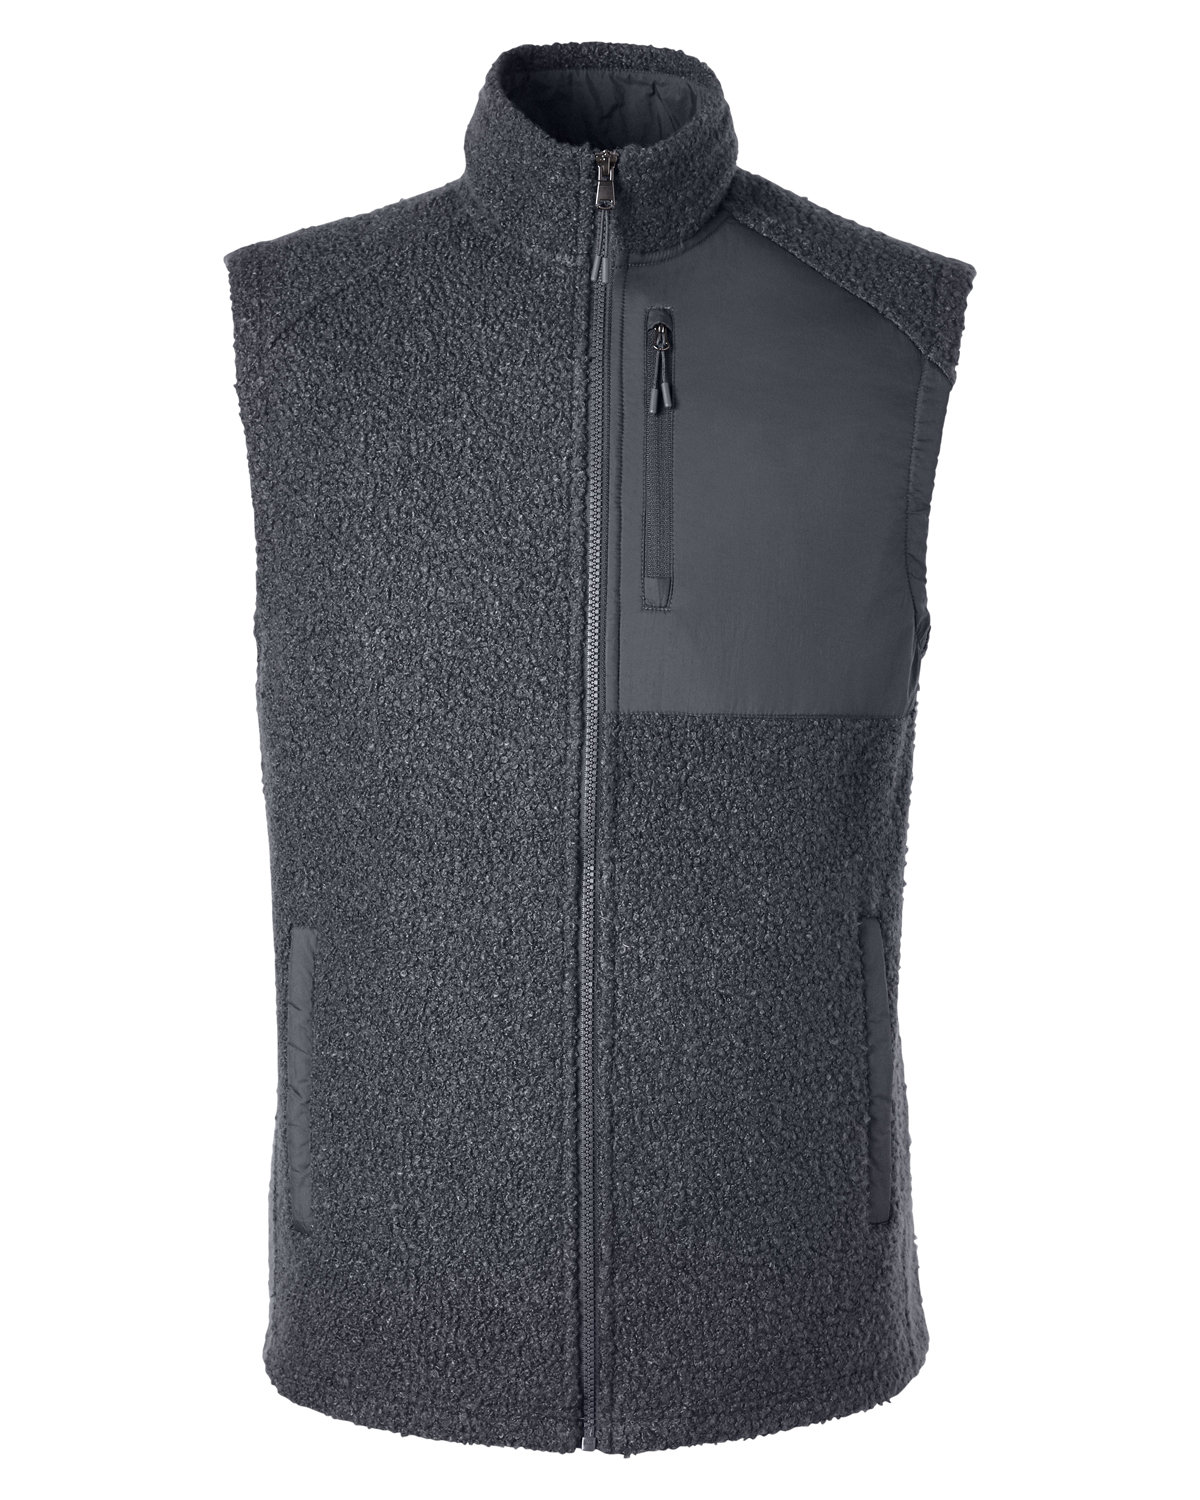 North End NE714 - Men's Aura Sweater Fleece Vest